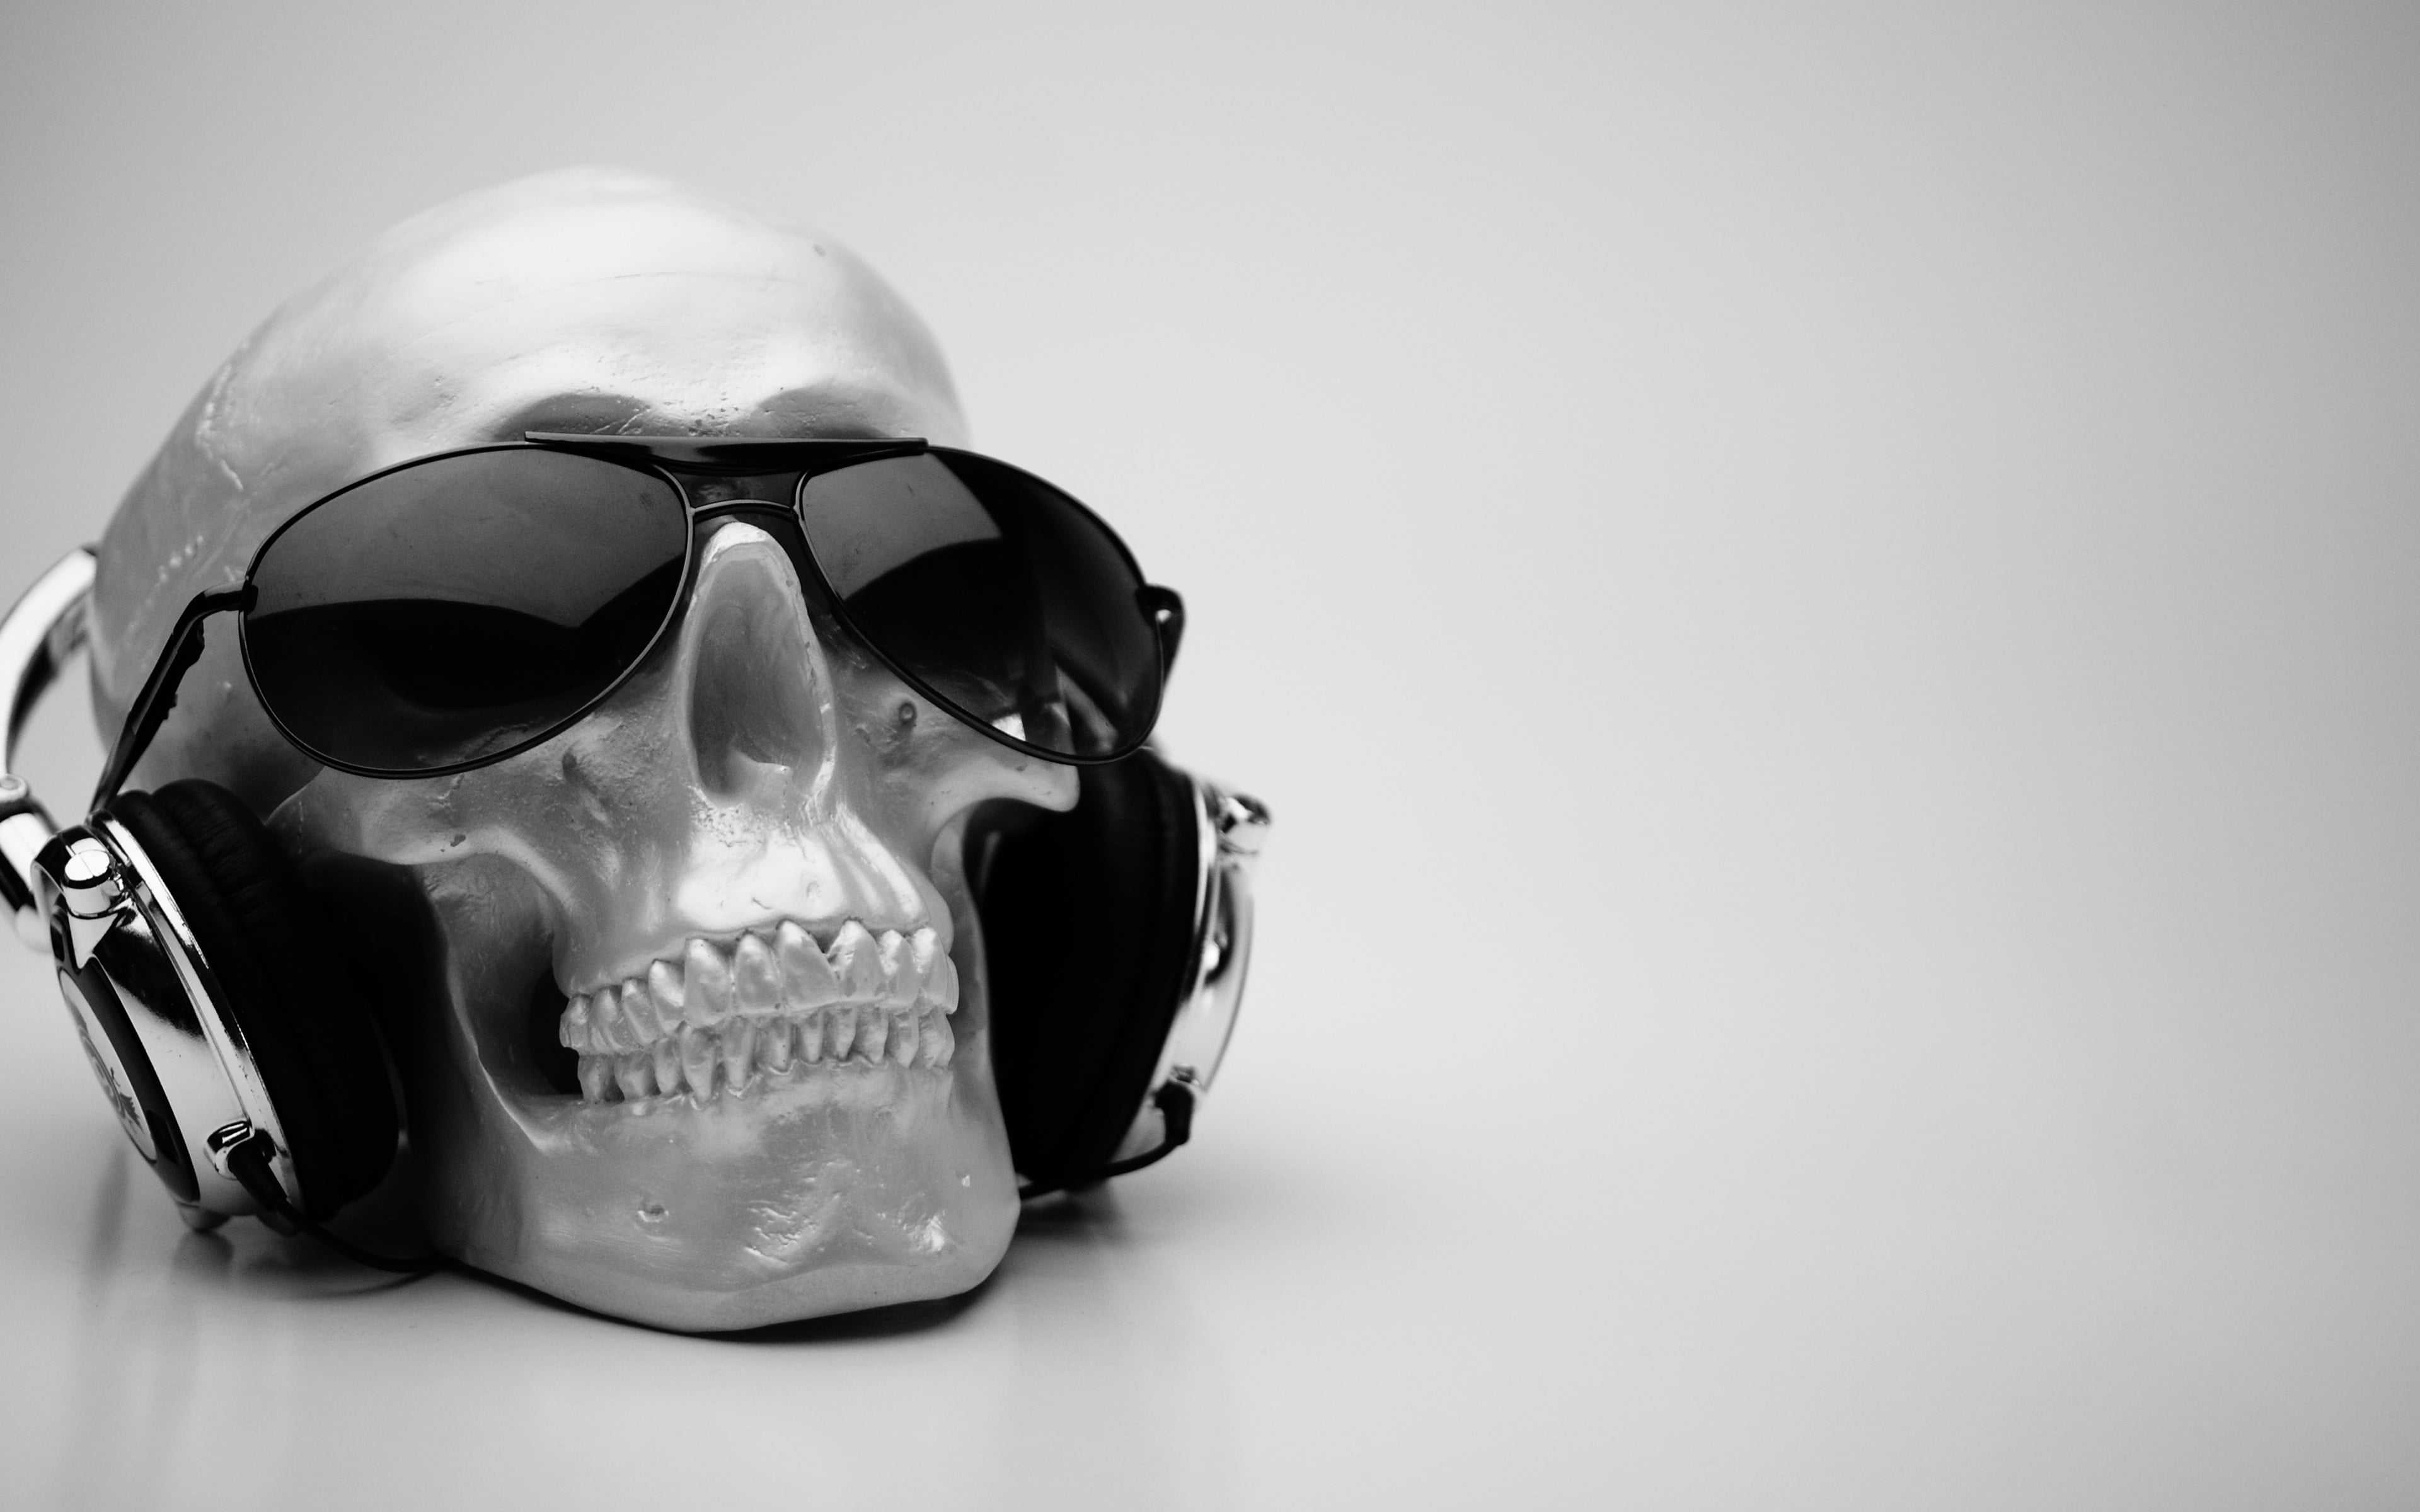 Black framed aviator sunglasses, headphones, skull, sunglasses